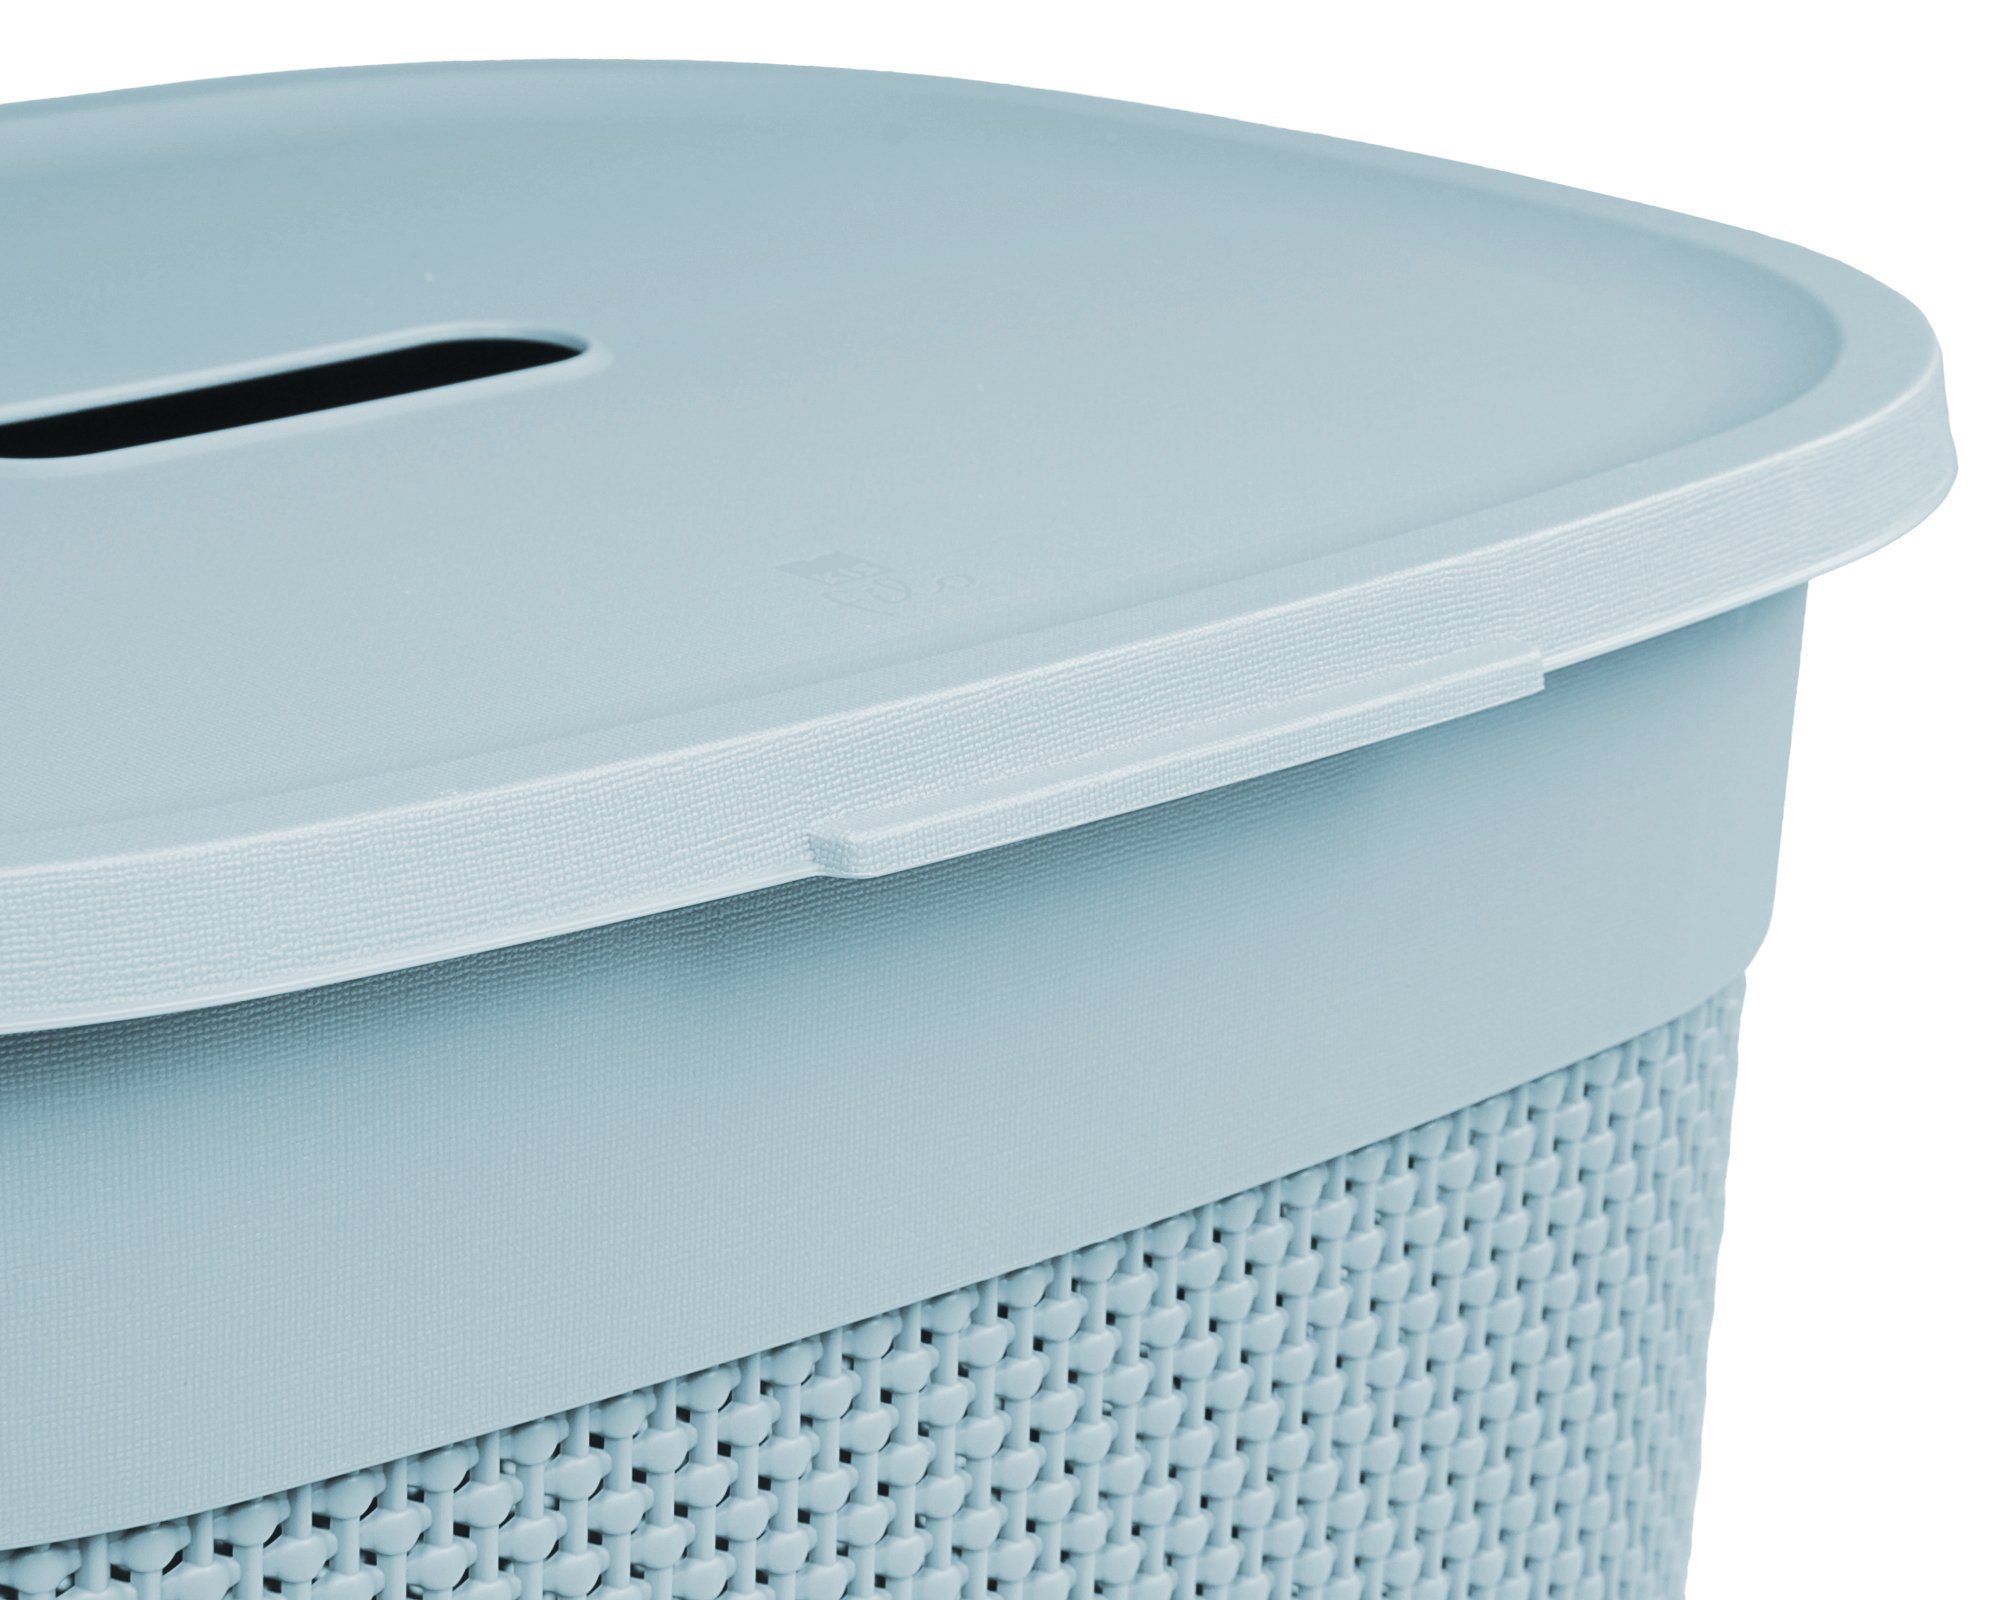 Wäschekorb neues Liter, 55 ONDIS24 edle Blau italienisches Verarbeitung Wäschebox Design, aus gut belüftet, Kunststoff Filo